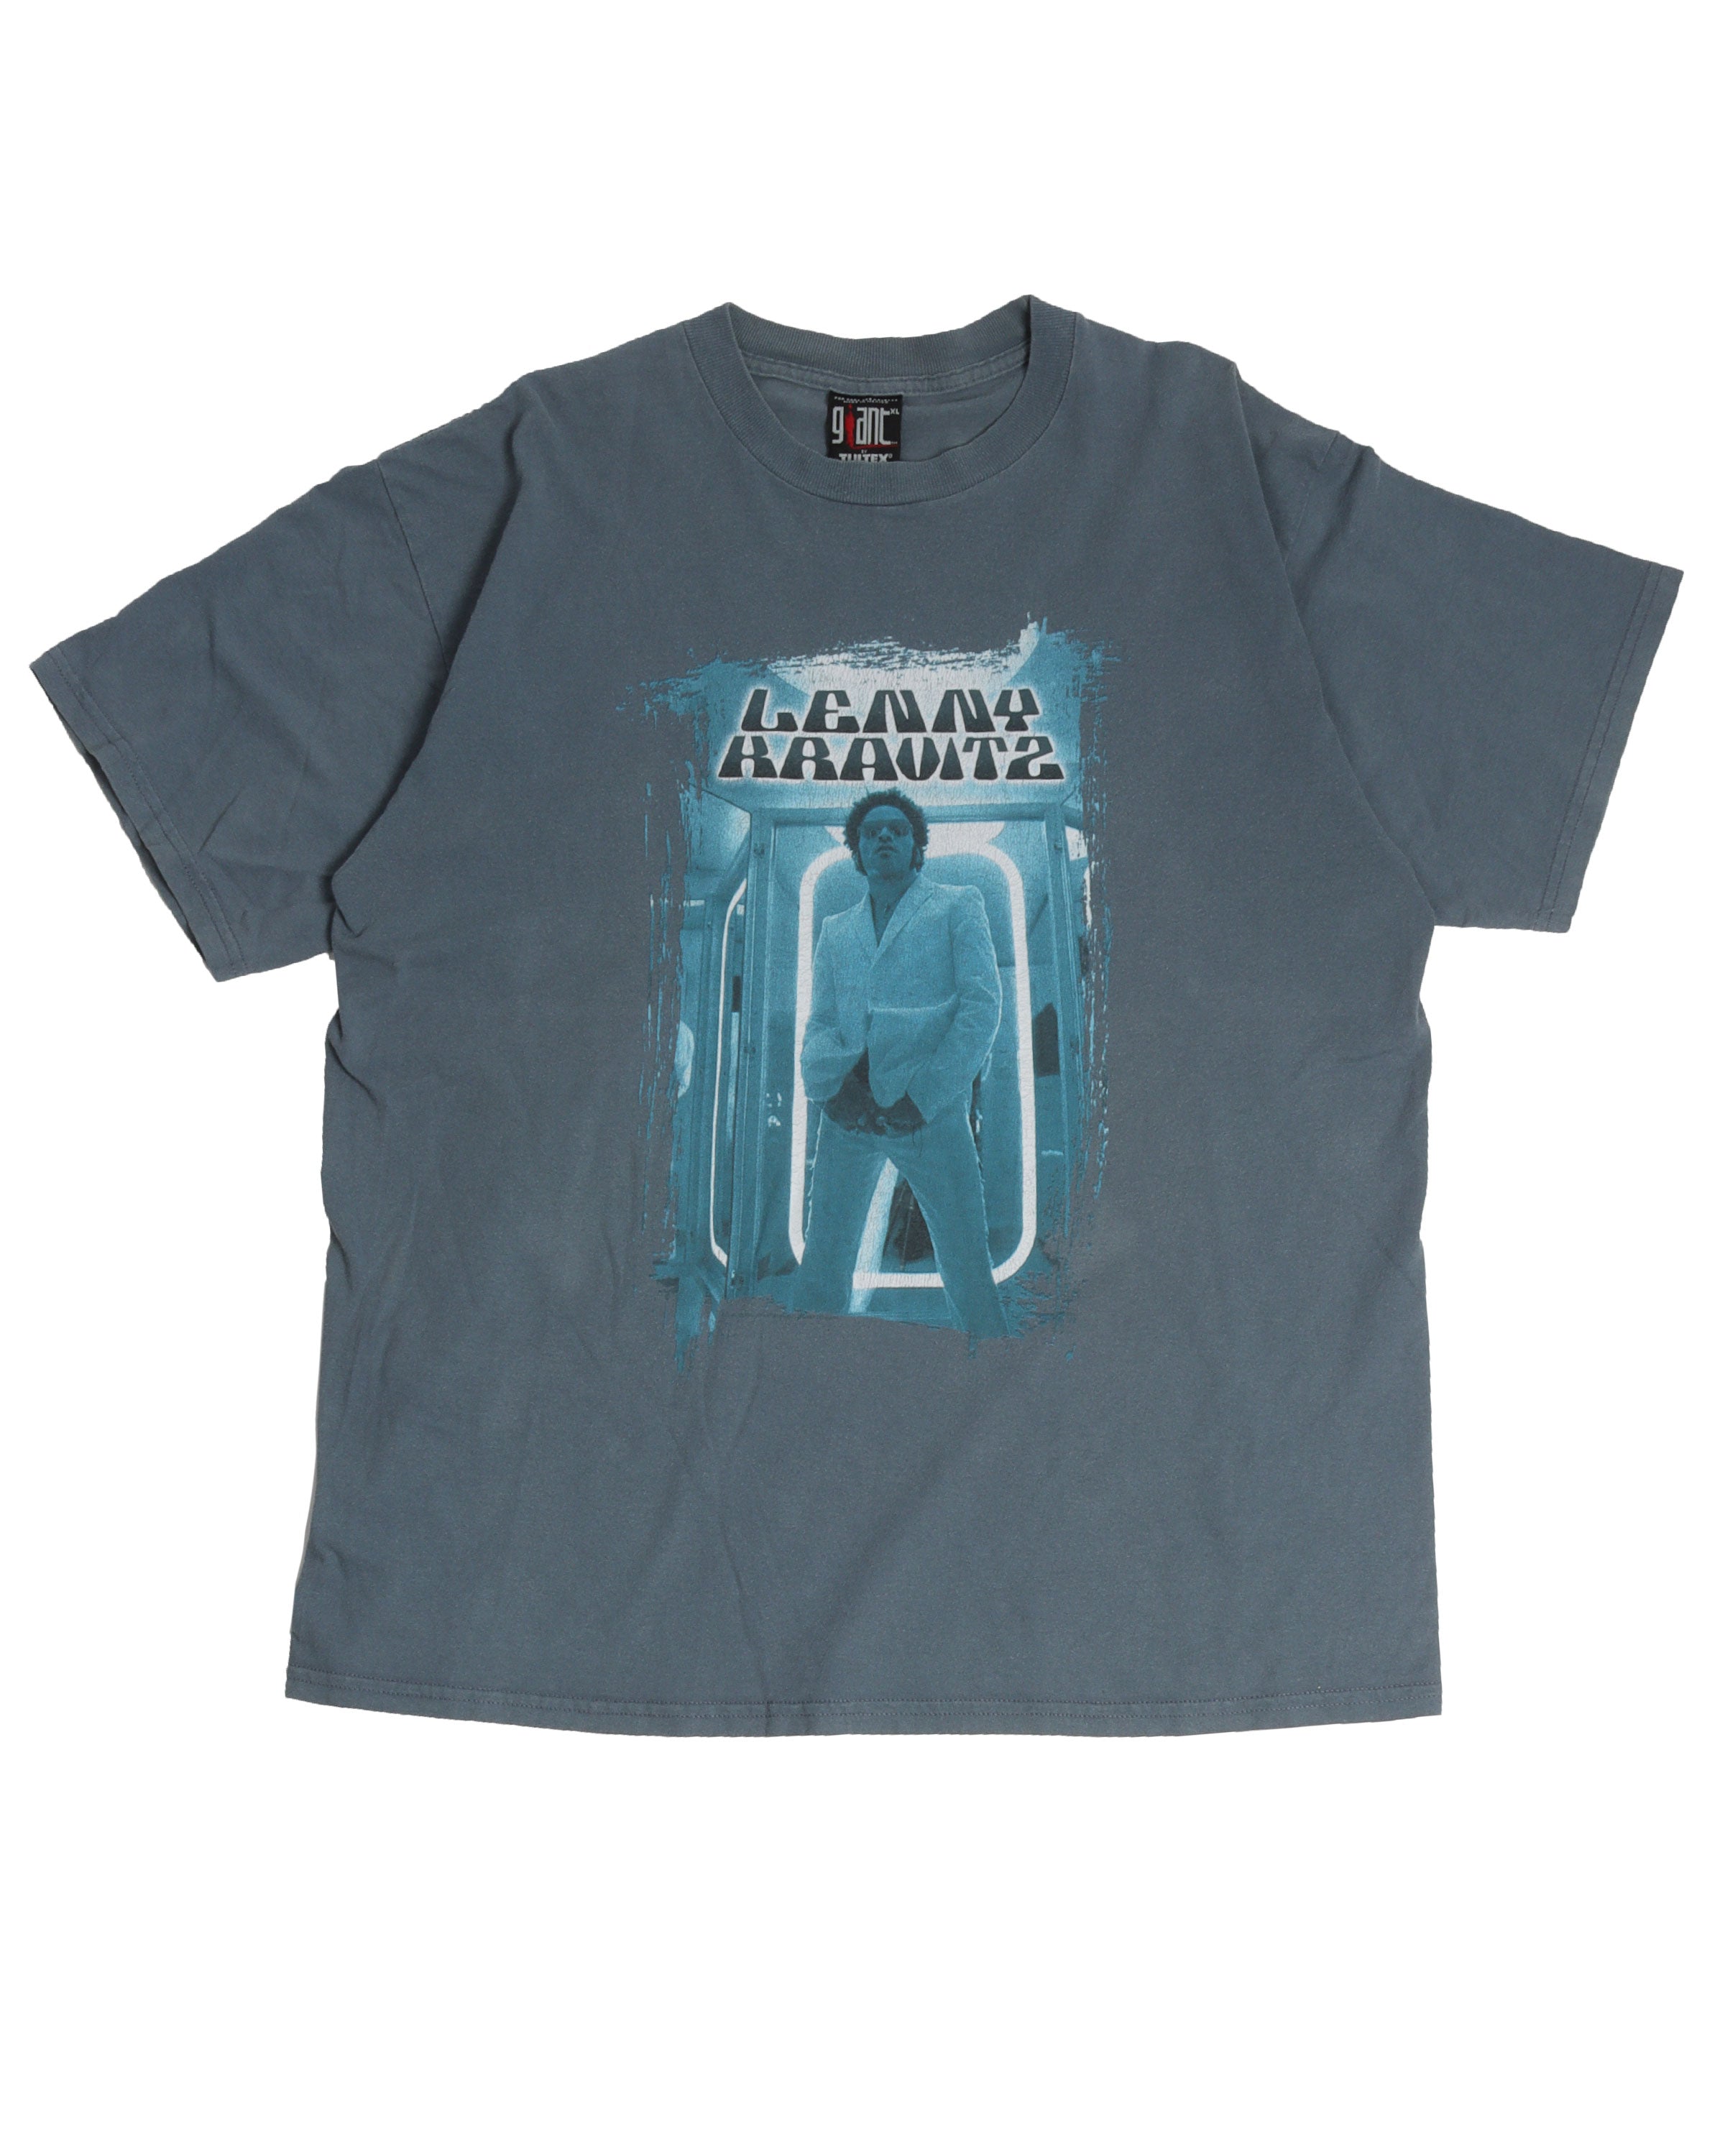 Lenny Kravitz 5 1999 Tour T-Shirt